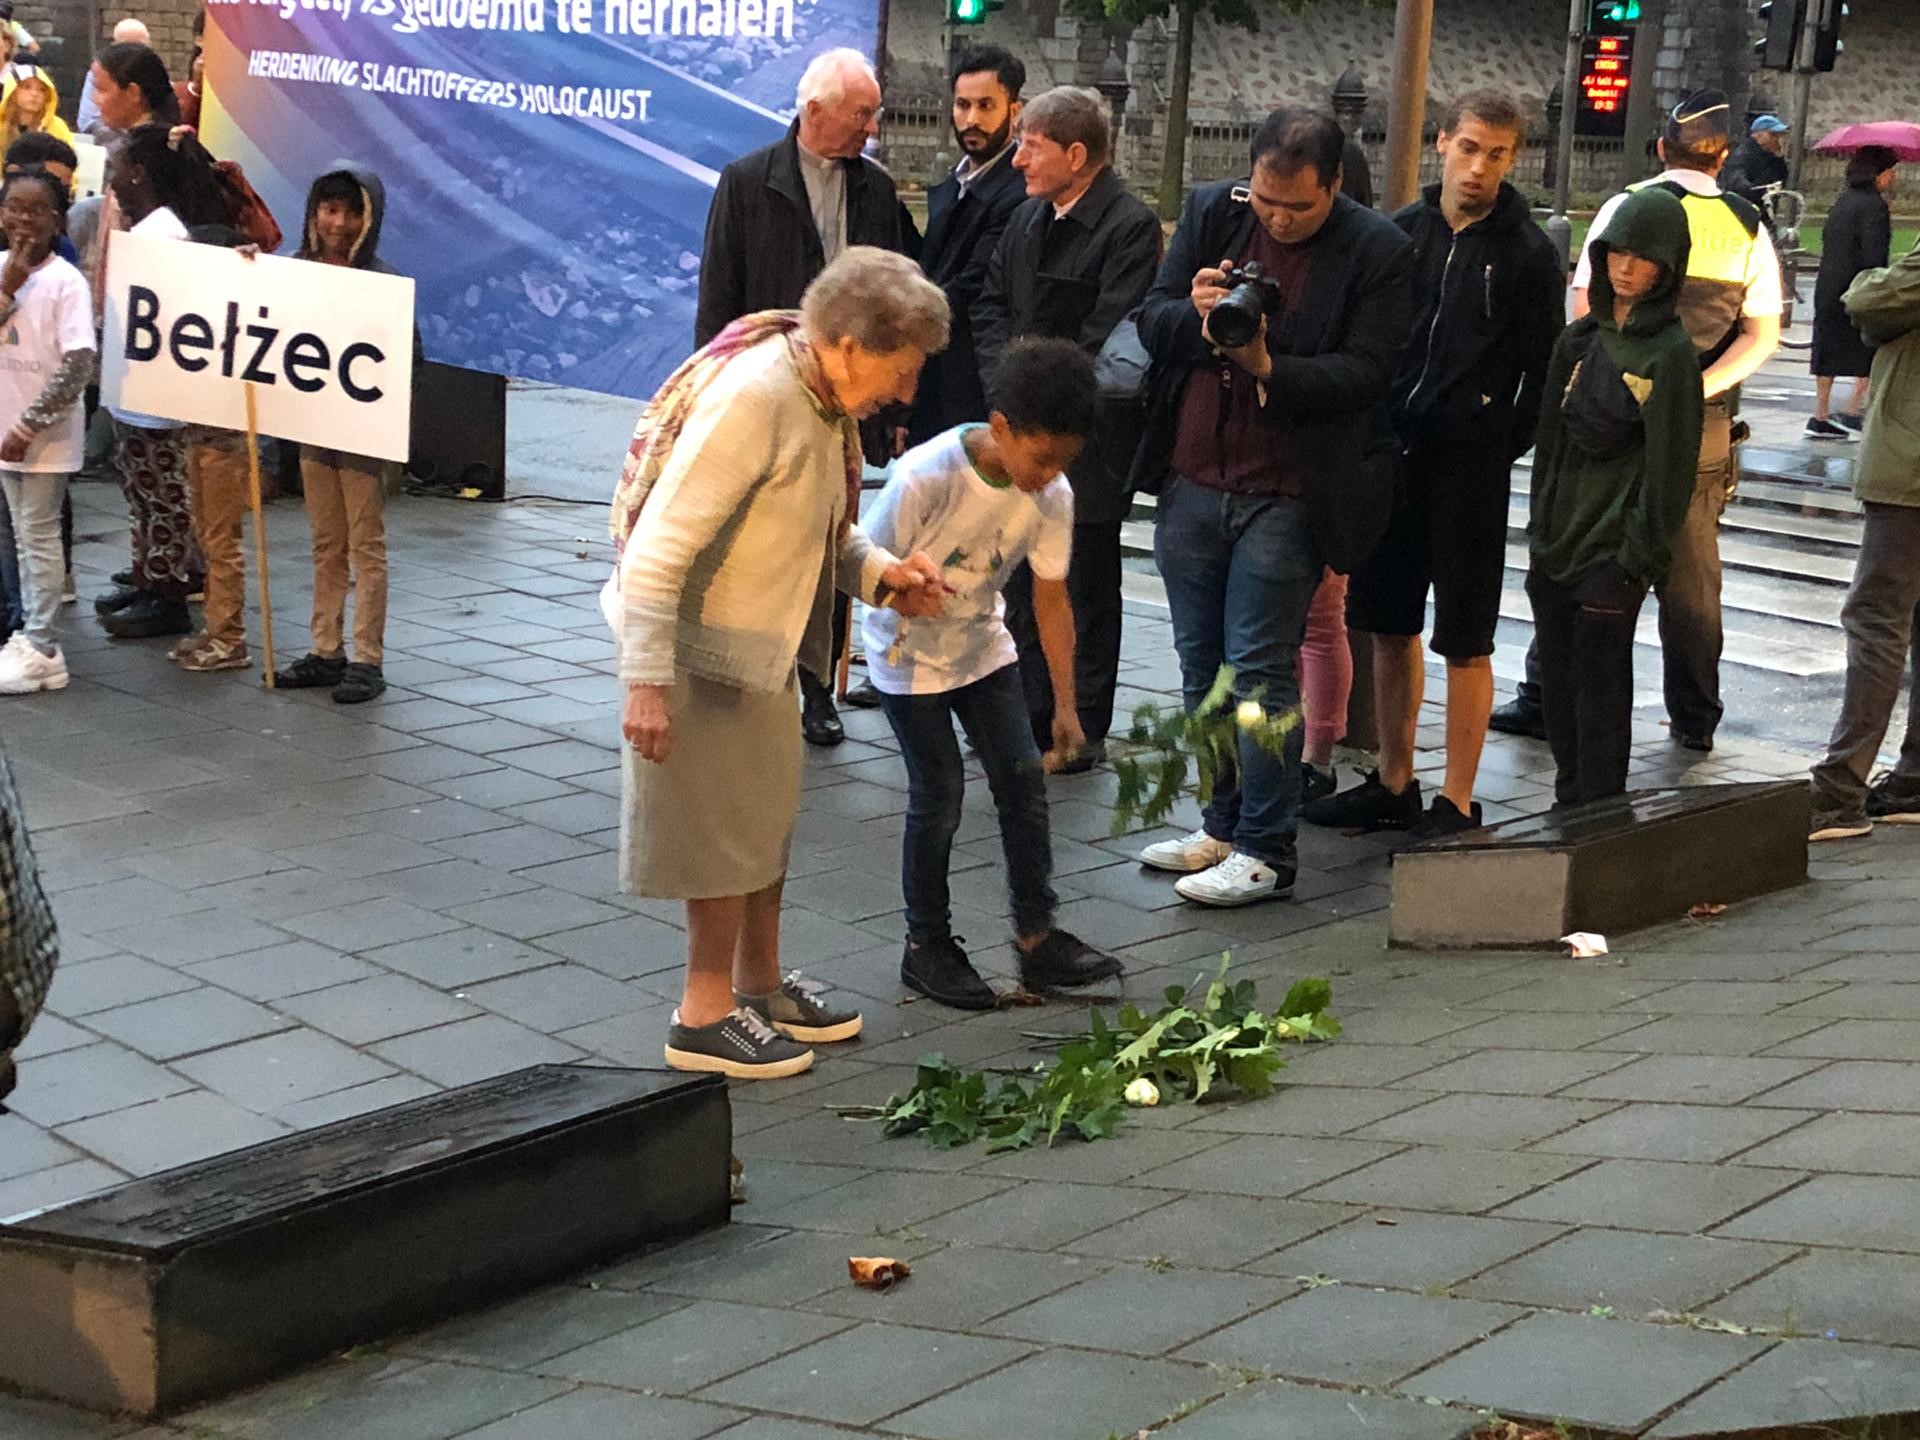 De hulde aan het monument voor de gedeporteerde Joodse bevolking aan de Belgiëlei in Antwerpen